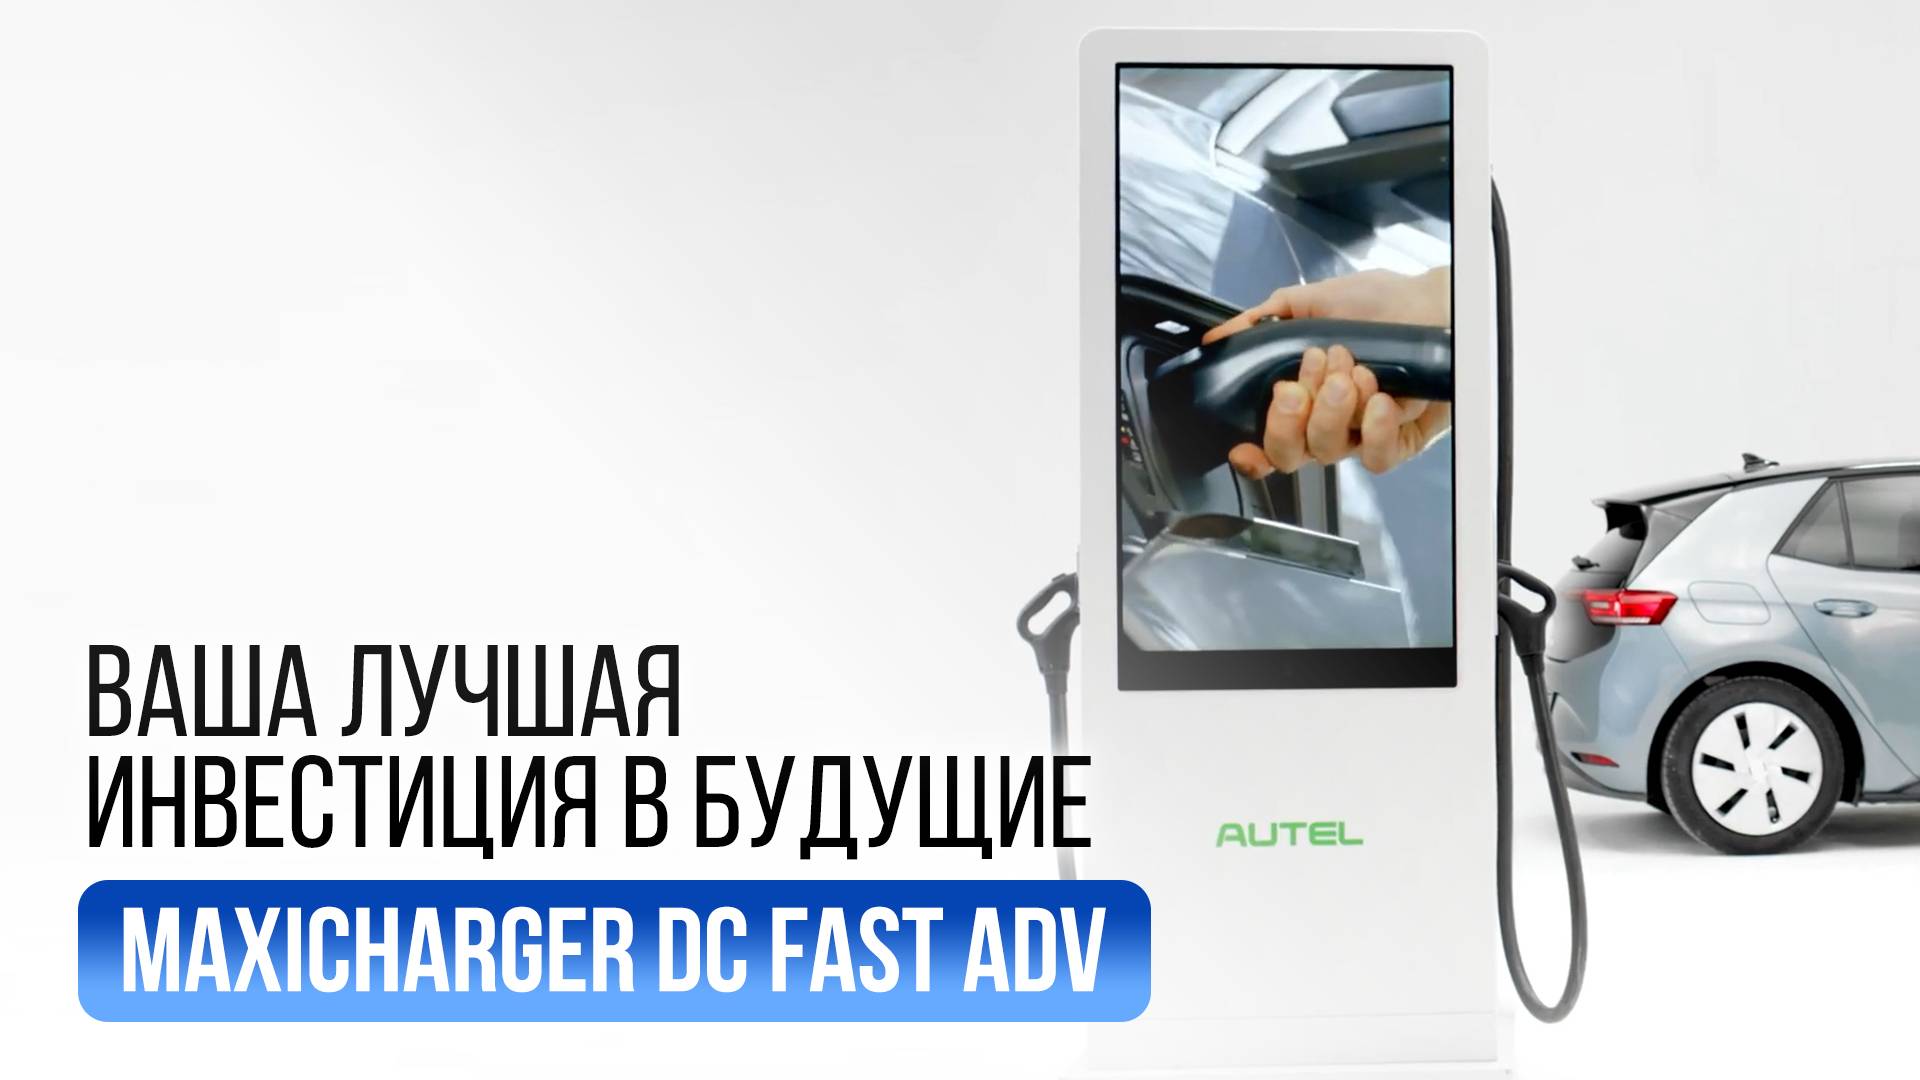 Быстрая зарядная станция DC Maxicharger DC Fast ADV